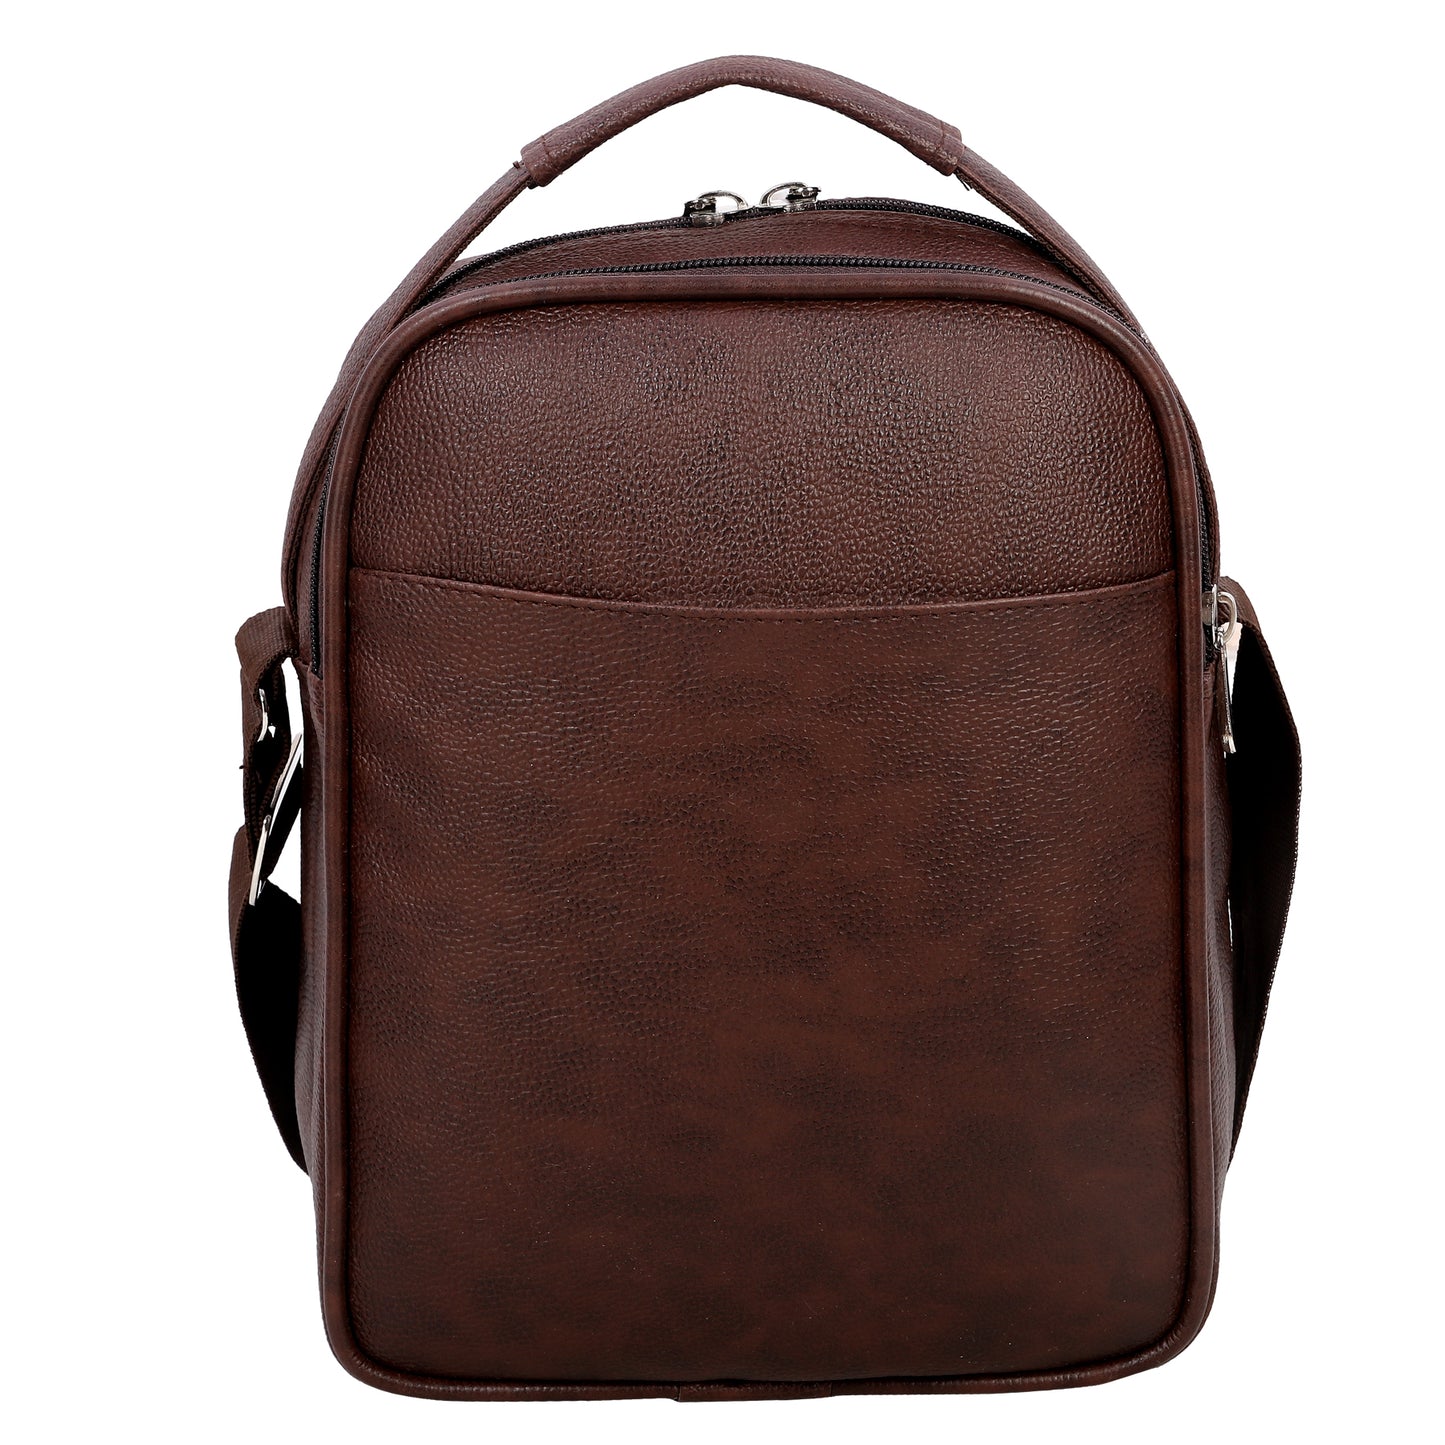 Leather World Vegan Leather 5.6 Liter Sling Cross Body Travel Office Business Messenger Bag for Men Women - Brown